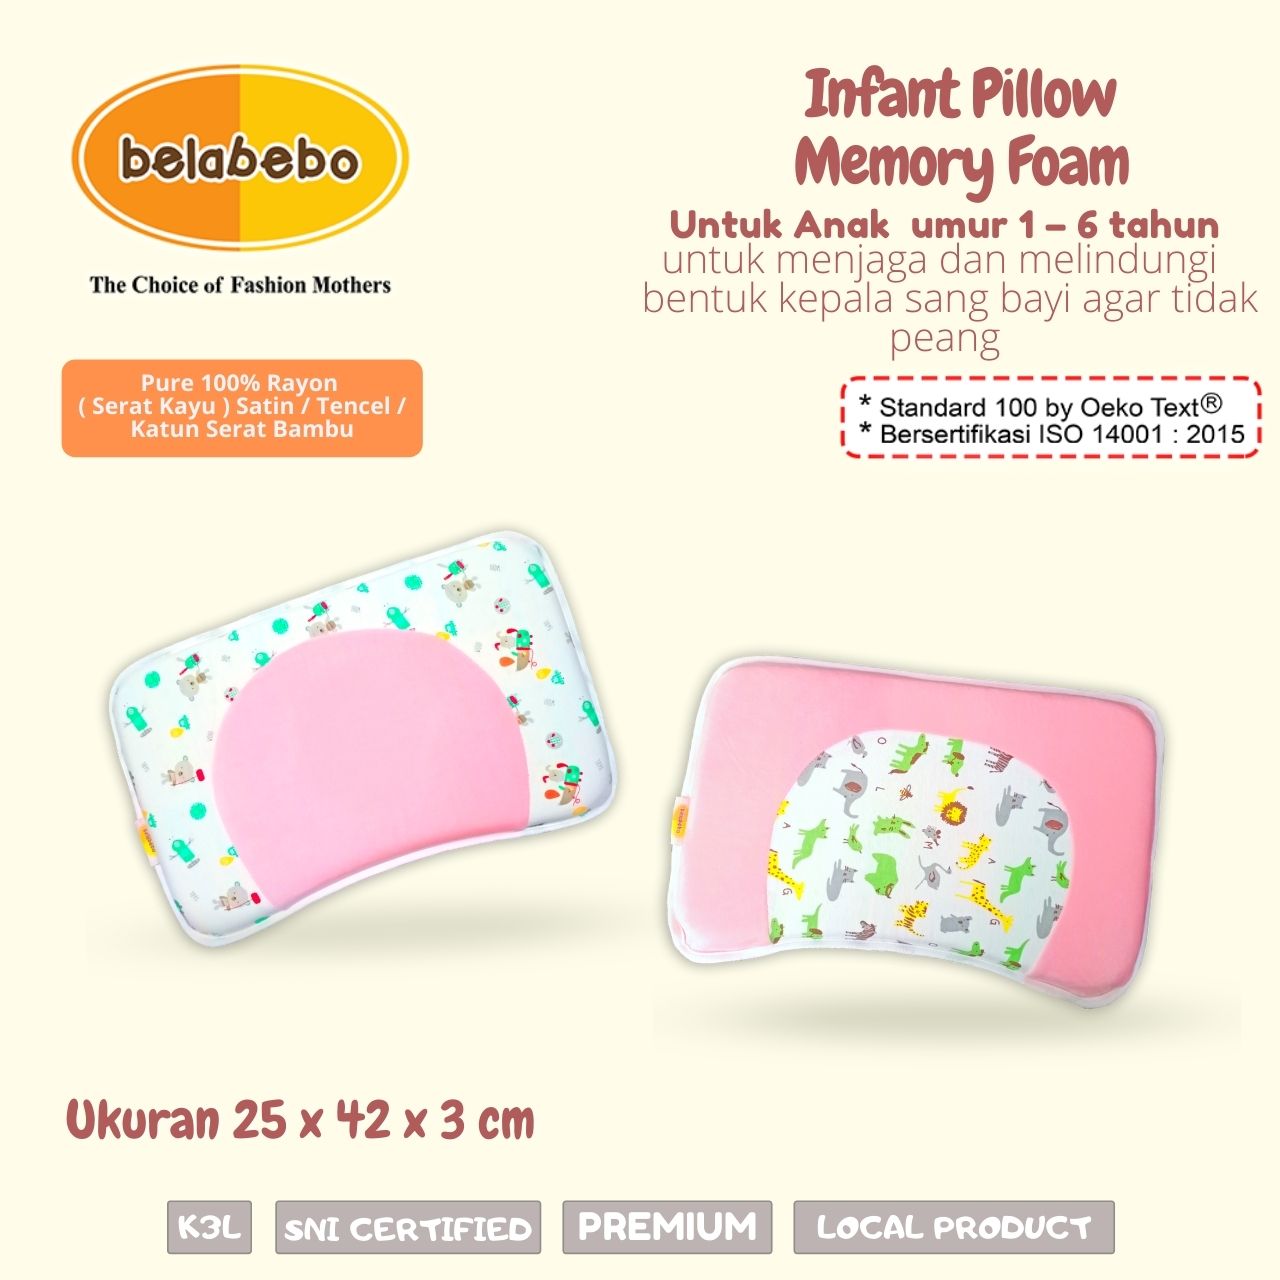 Infant Pillow untuk anak umur 1 - 6 tahun